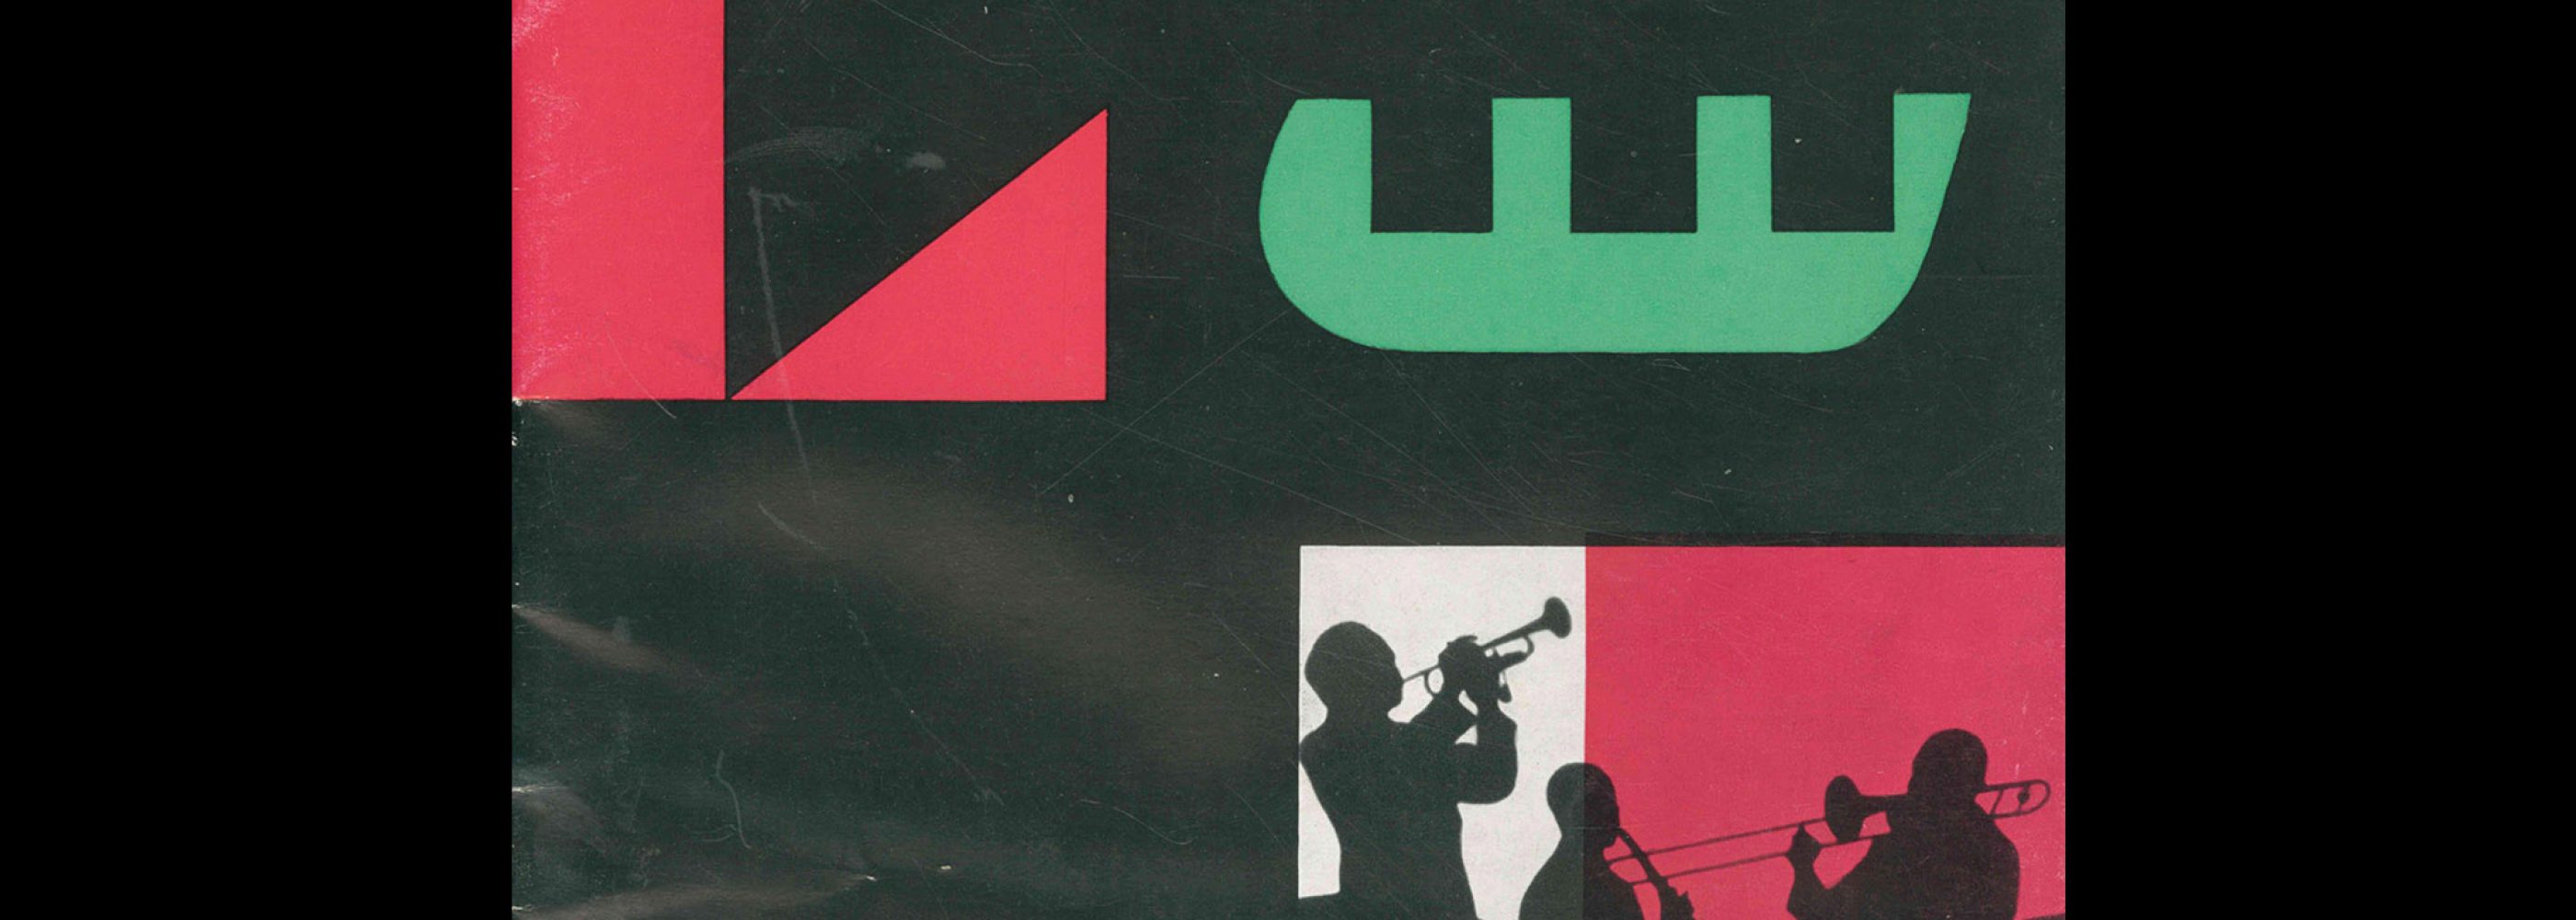 Jazz in the USA, US Informationsdienst JAZZ in USA eine ausstellung, 1956. Designed by Muller-blase, (Karl Oskar Blase, Felix Müller)